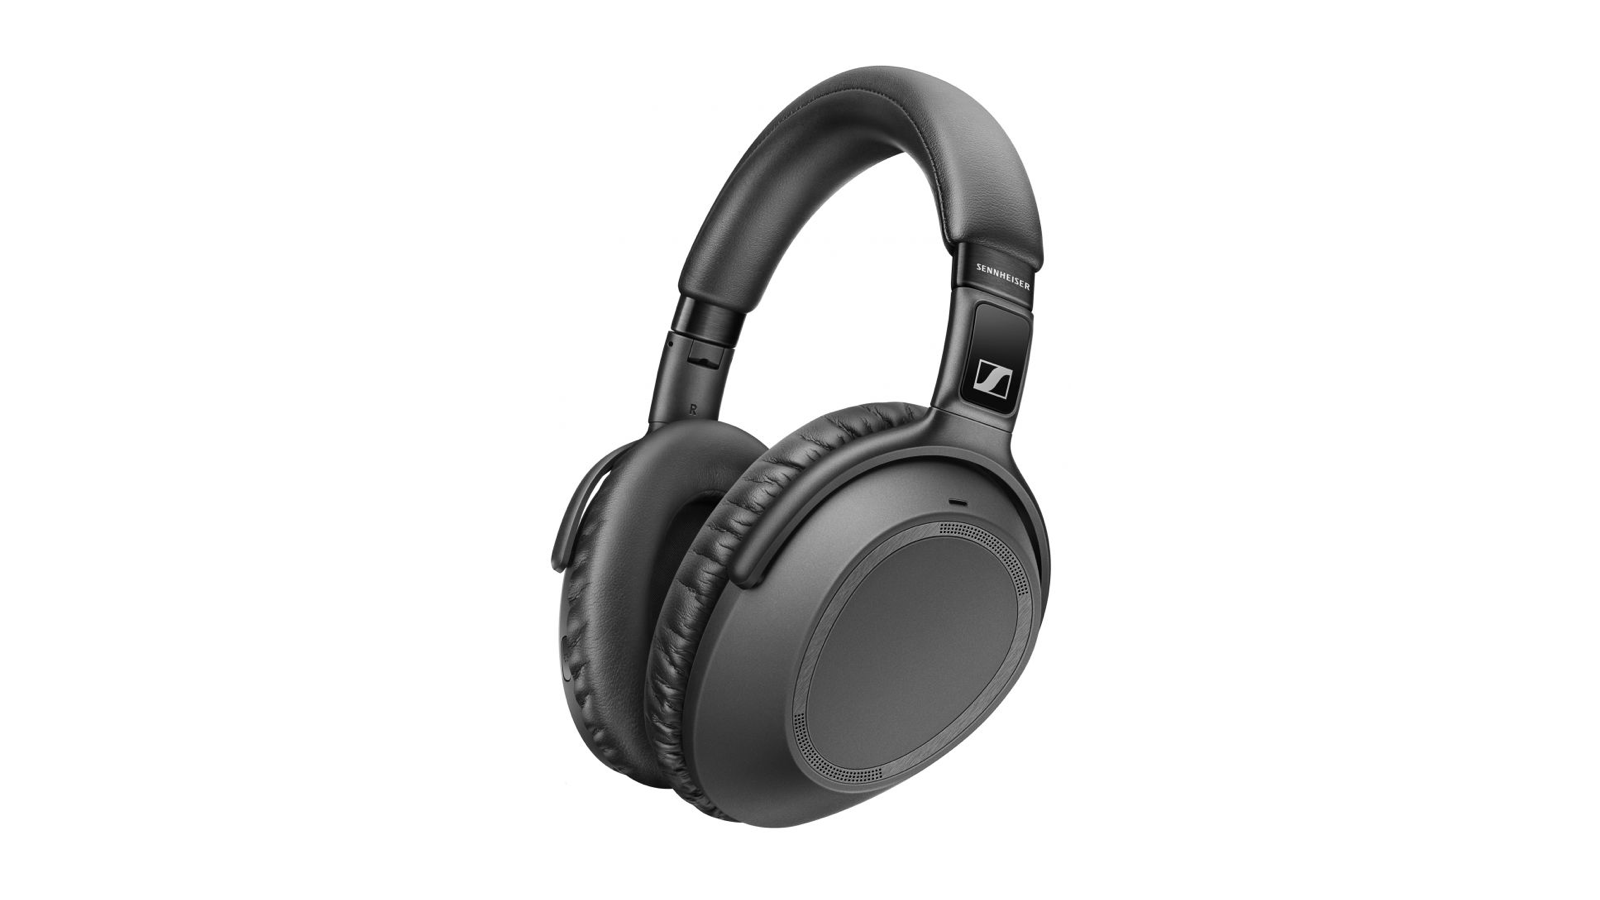 #IFA19 Sennheiser PXC 550-II - tai nghe chống ồn mới nhất của Sennheiser, pin 30h, giá 350$